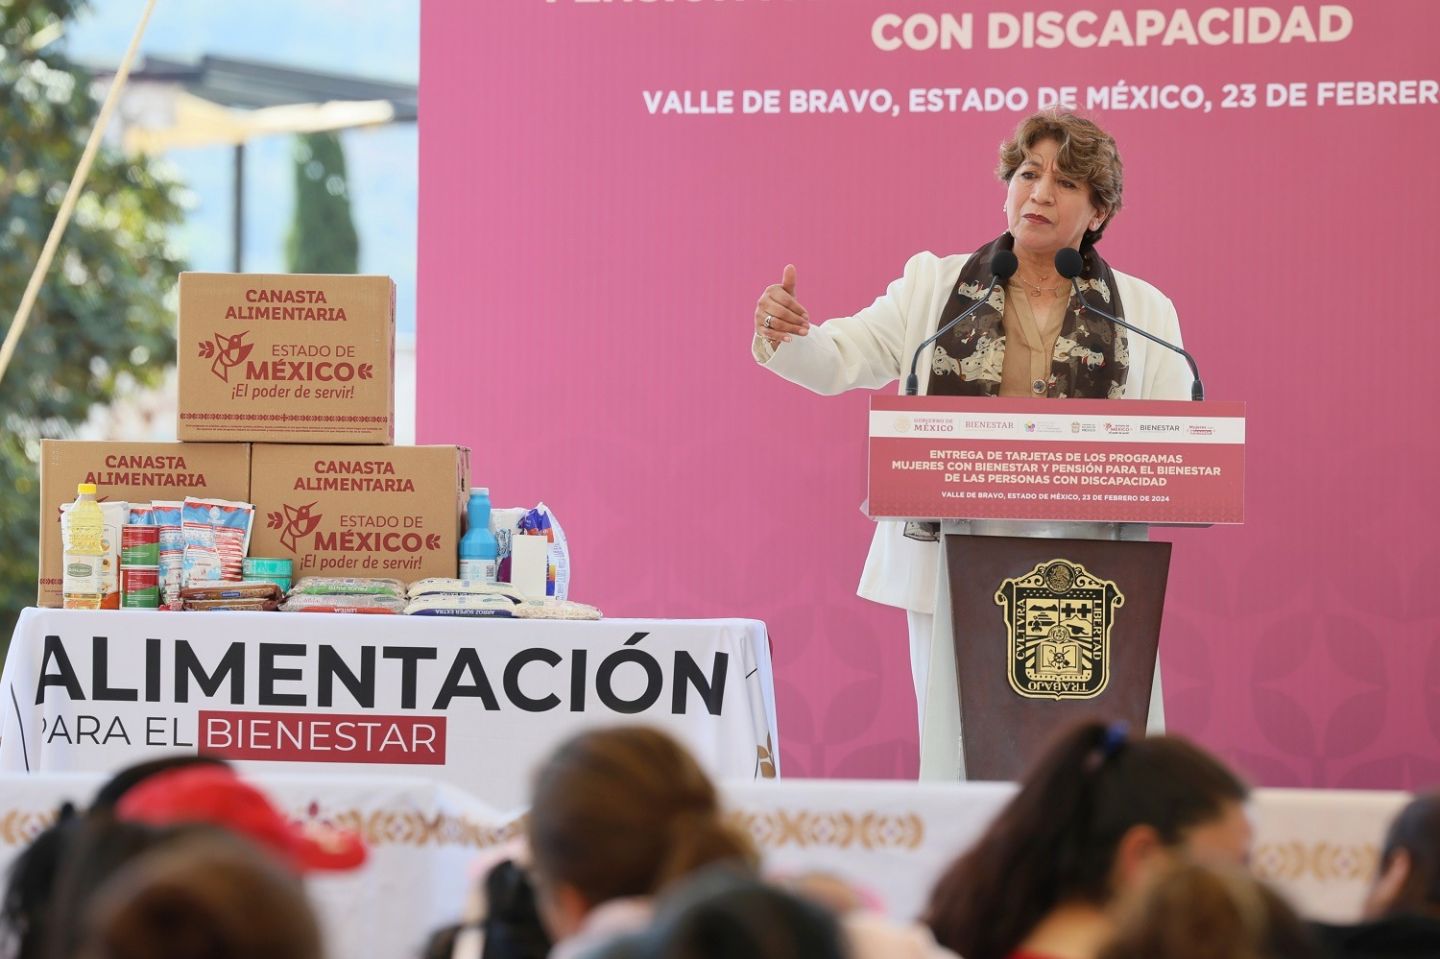 Entrega Gobernadora Delfina Gómez programas de Bienestar para municipios del sur del Estado de México, beneficia a mujeres y personas con discapacidad